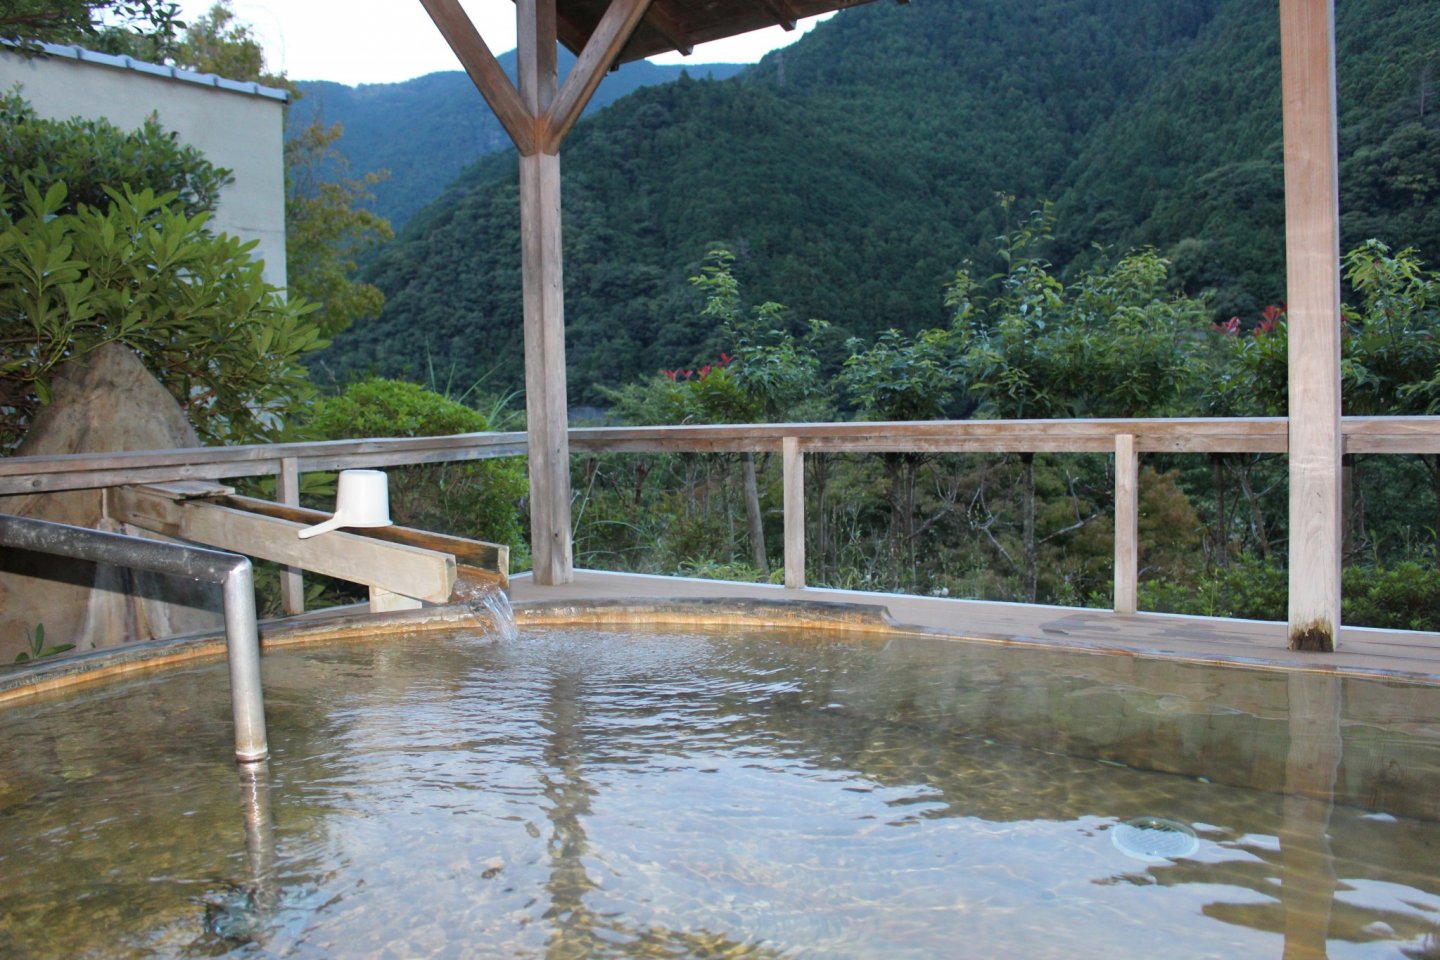 The outdoor cedar wood bath at Sugi no Yu Hotel